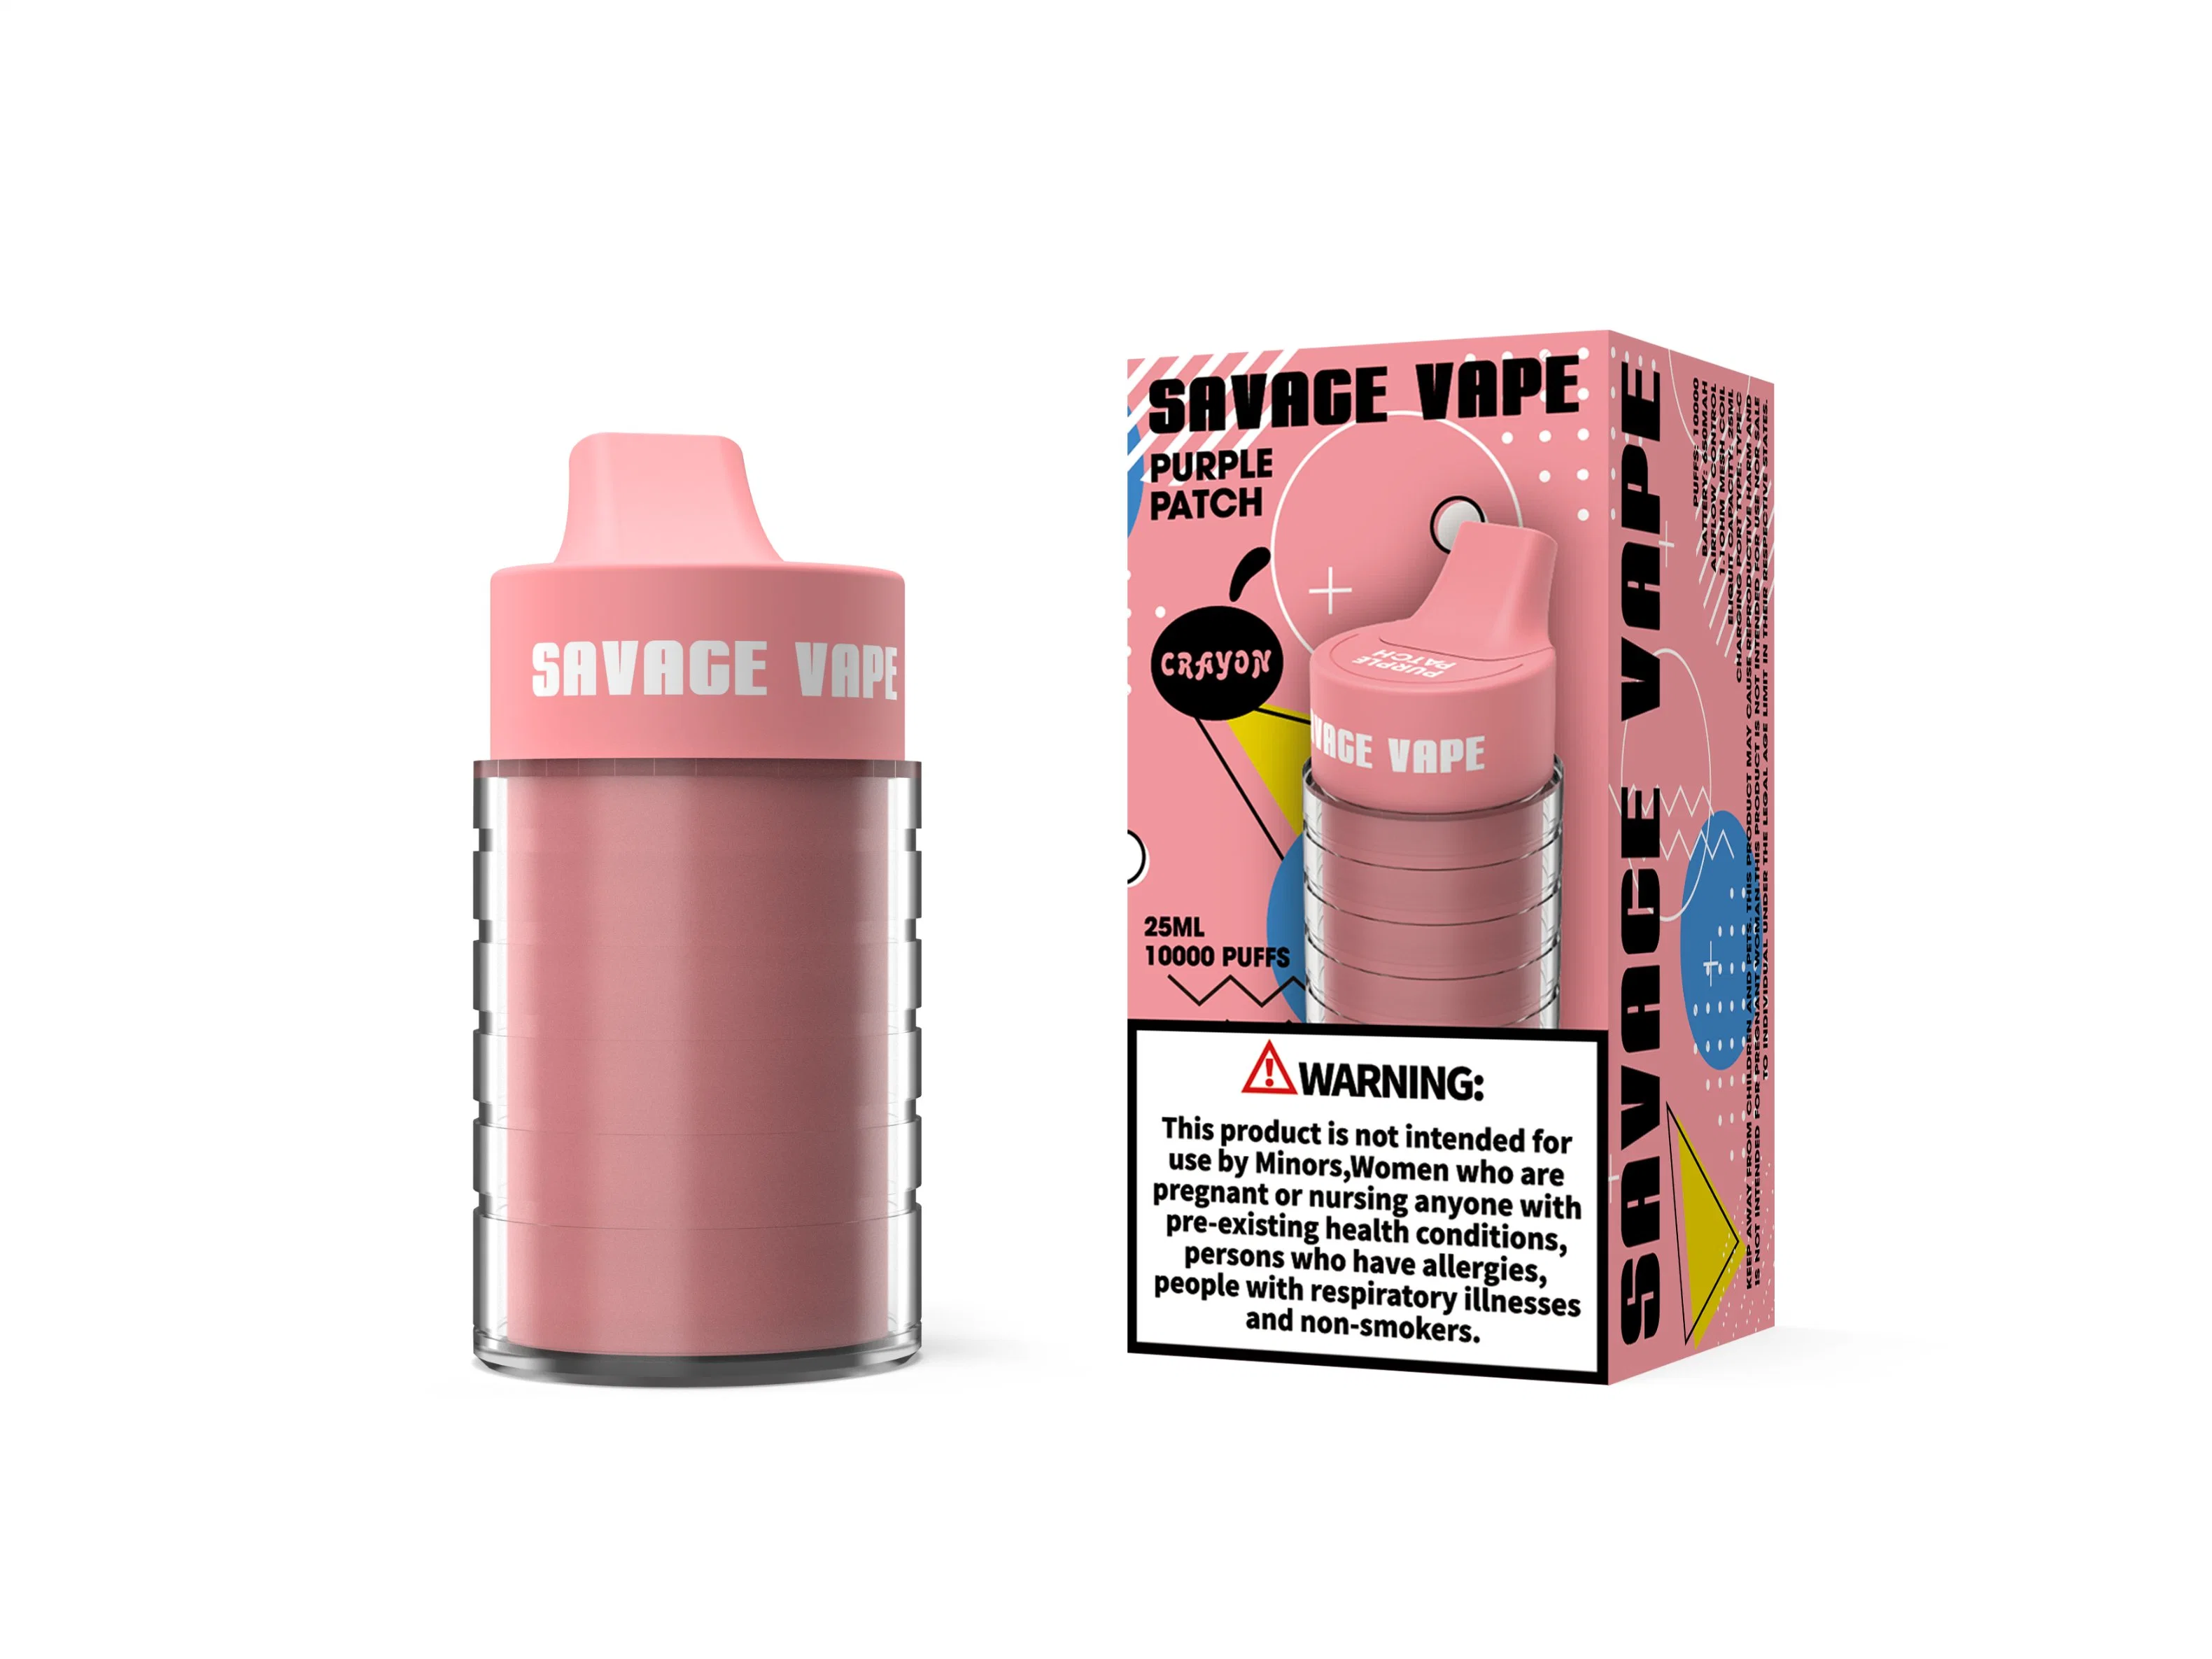 Atacado popular Savage Crayon Vapes10K puffs e cigarros Disposables Pape Puff 10K Max Cup 6000 Randm tornado Coke frasco 8000 5% de cassete NIC